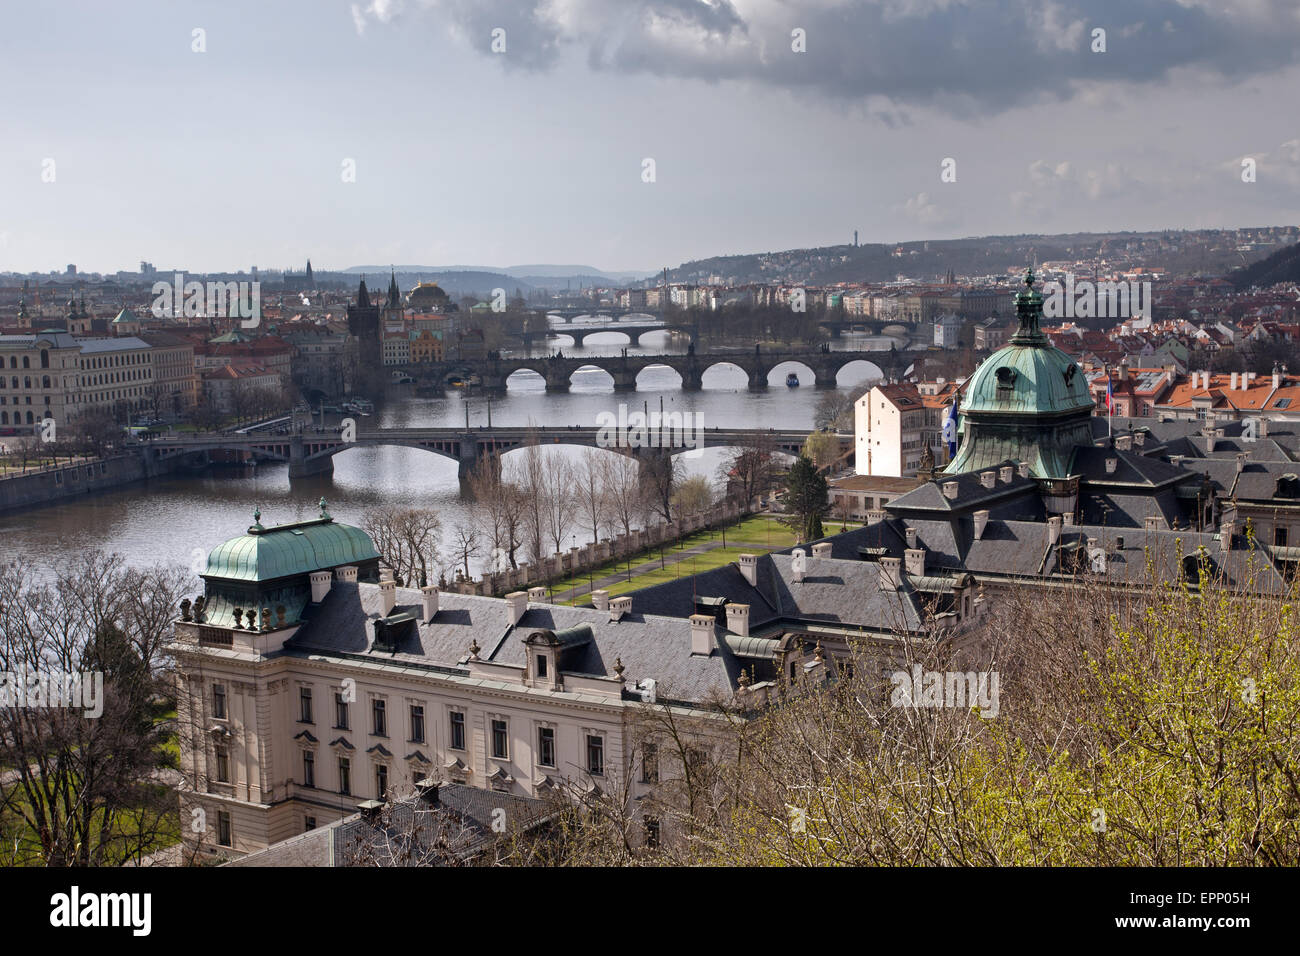 Letna Park: Prague Bridges Stock Photo